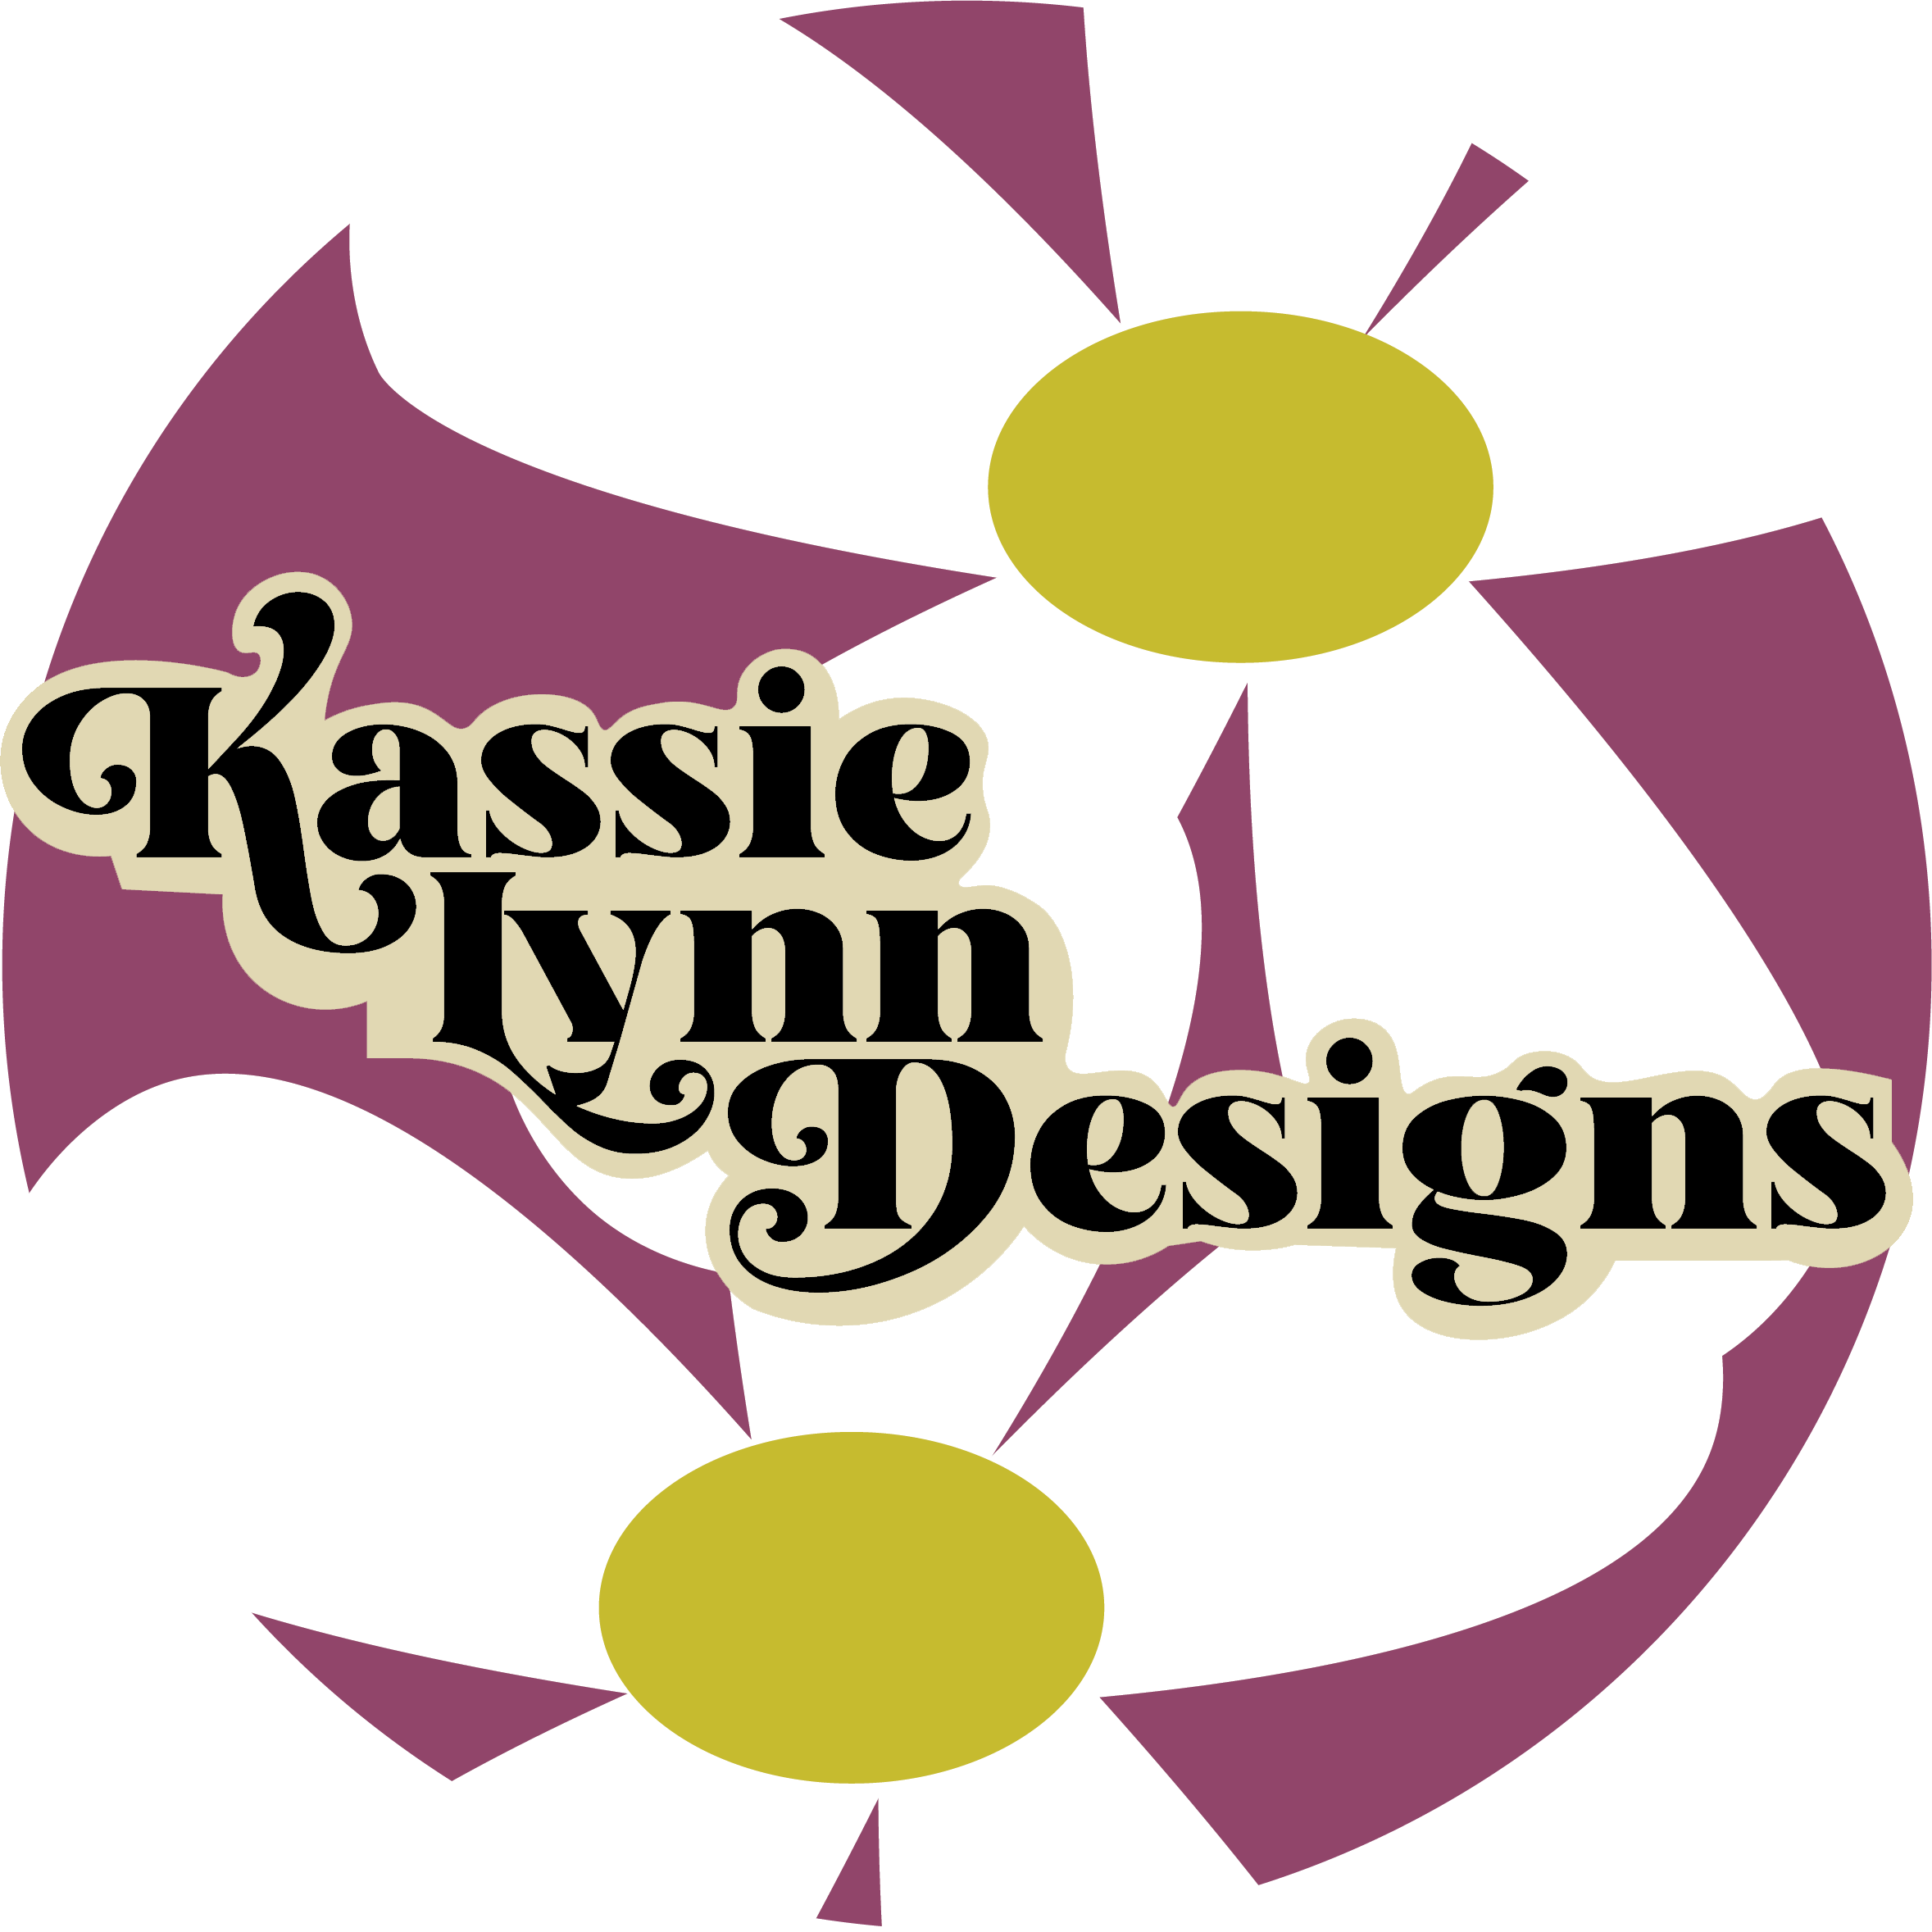 Kassie Lynn Designs